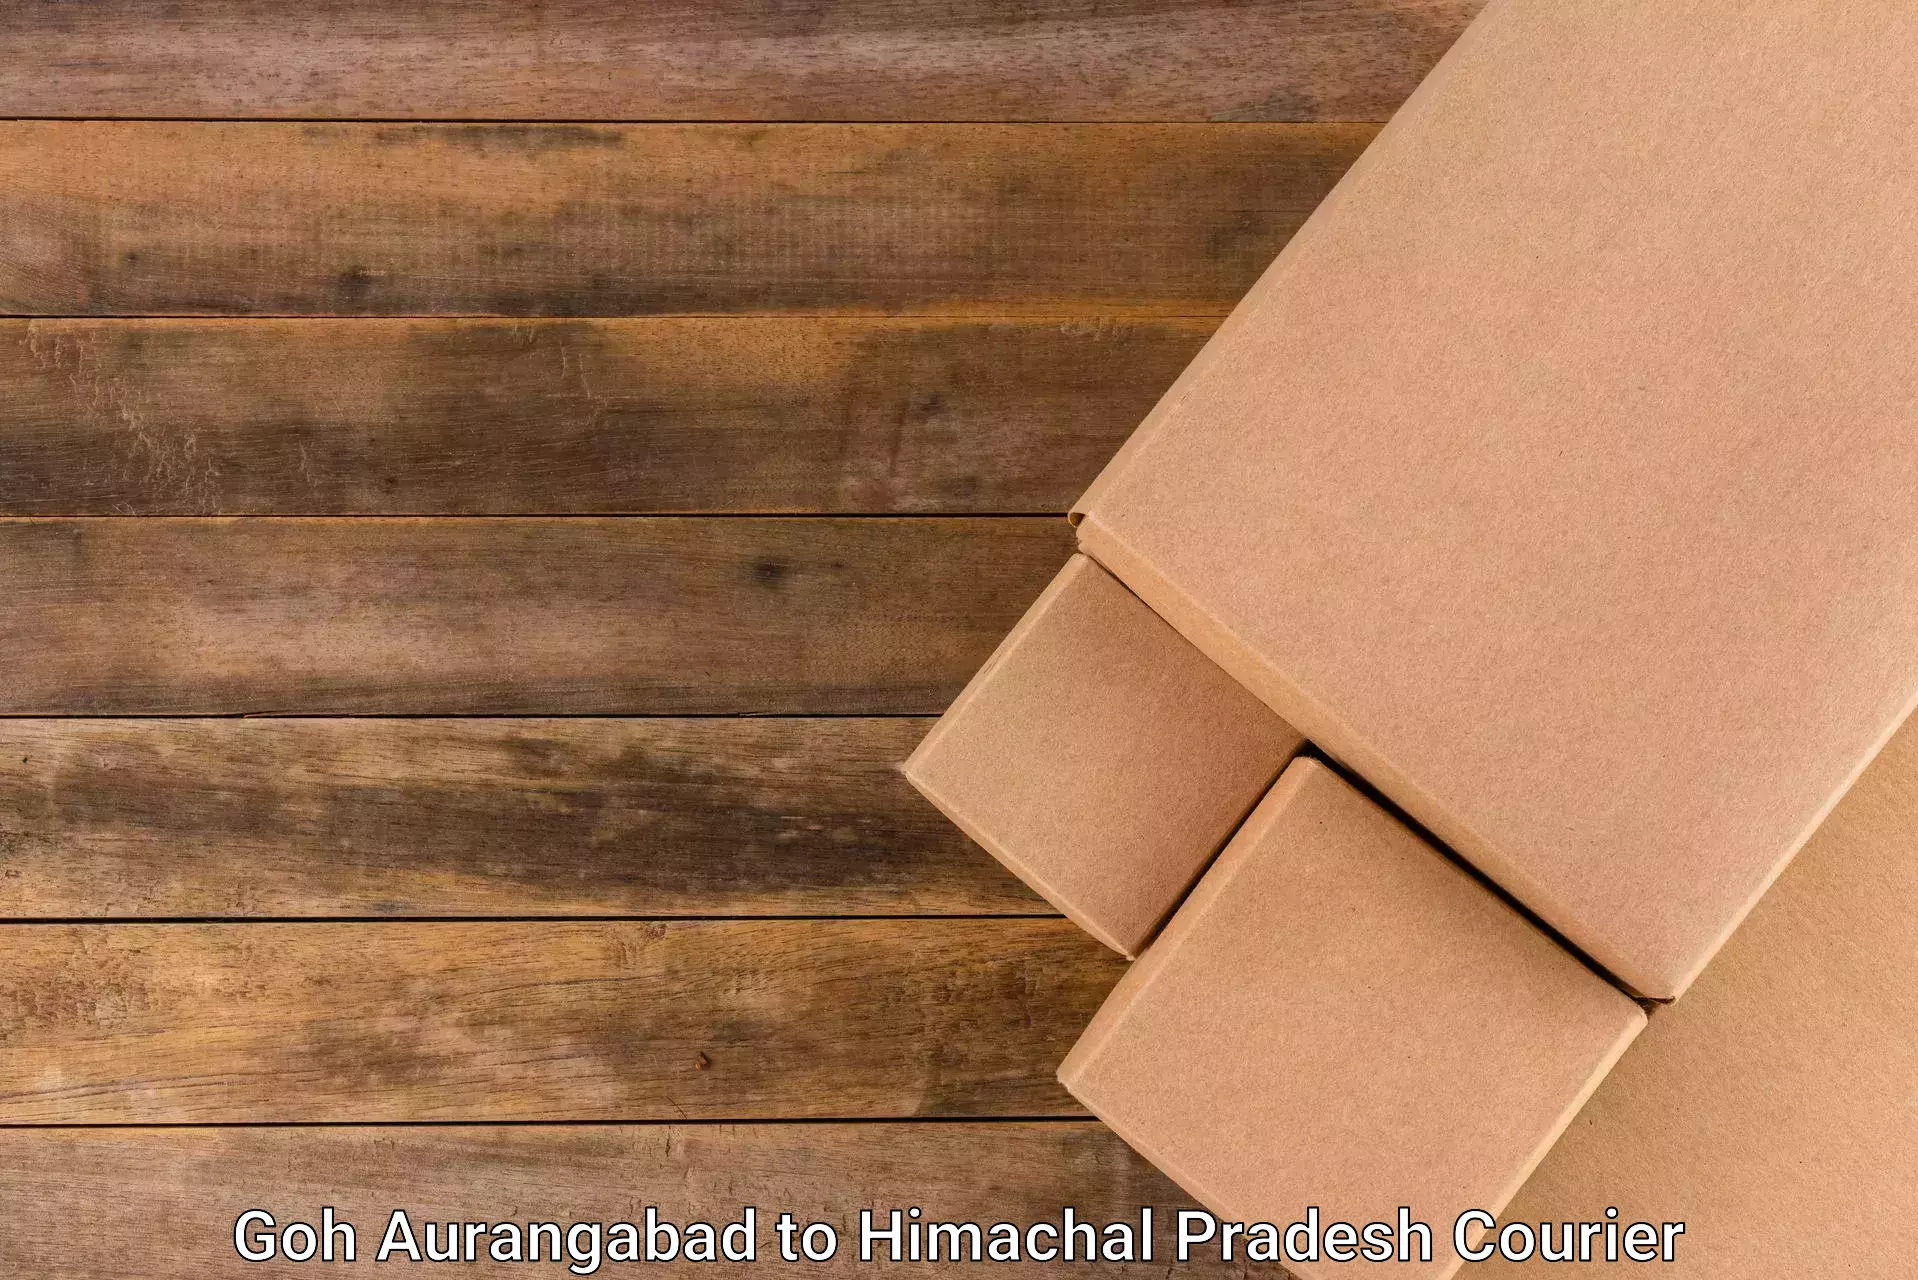 Affordable parcel service Goh Aurangabad to Rehan